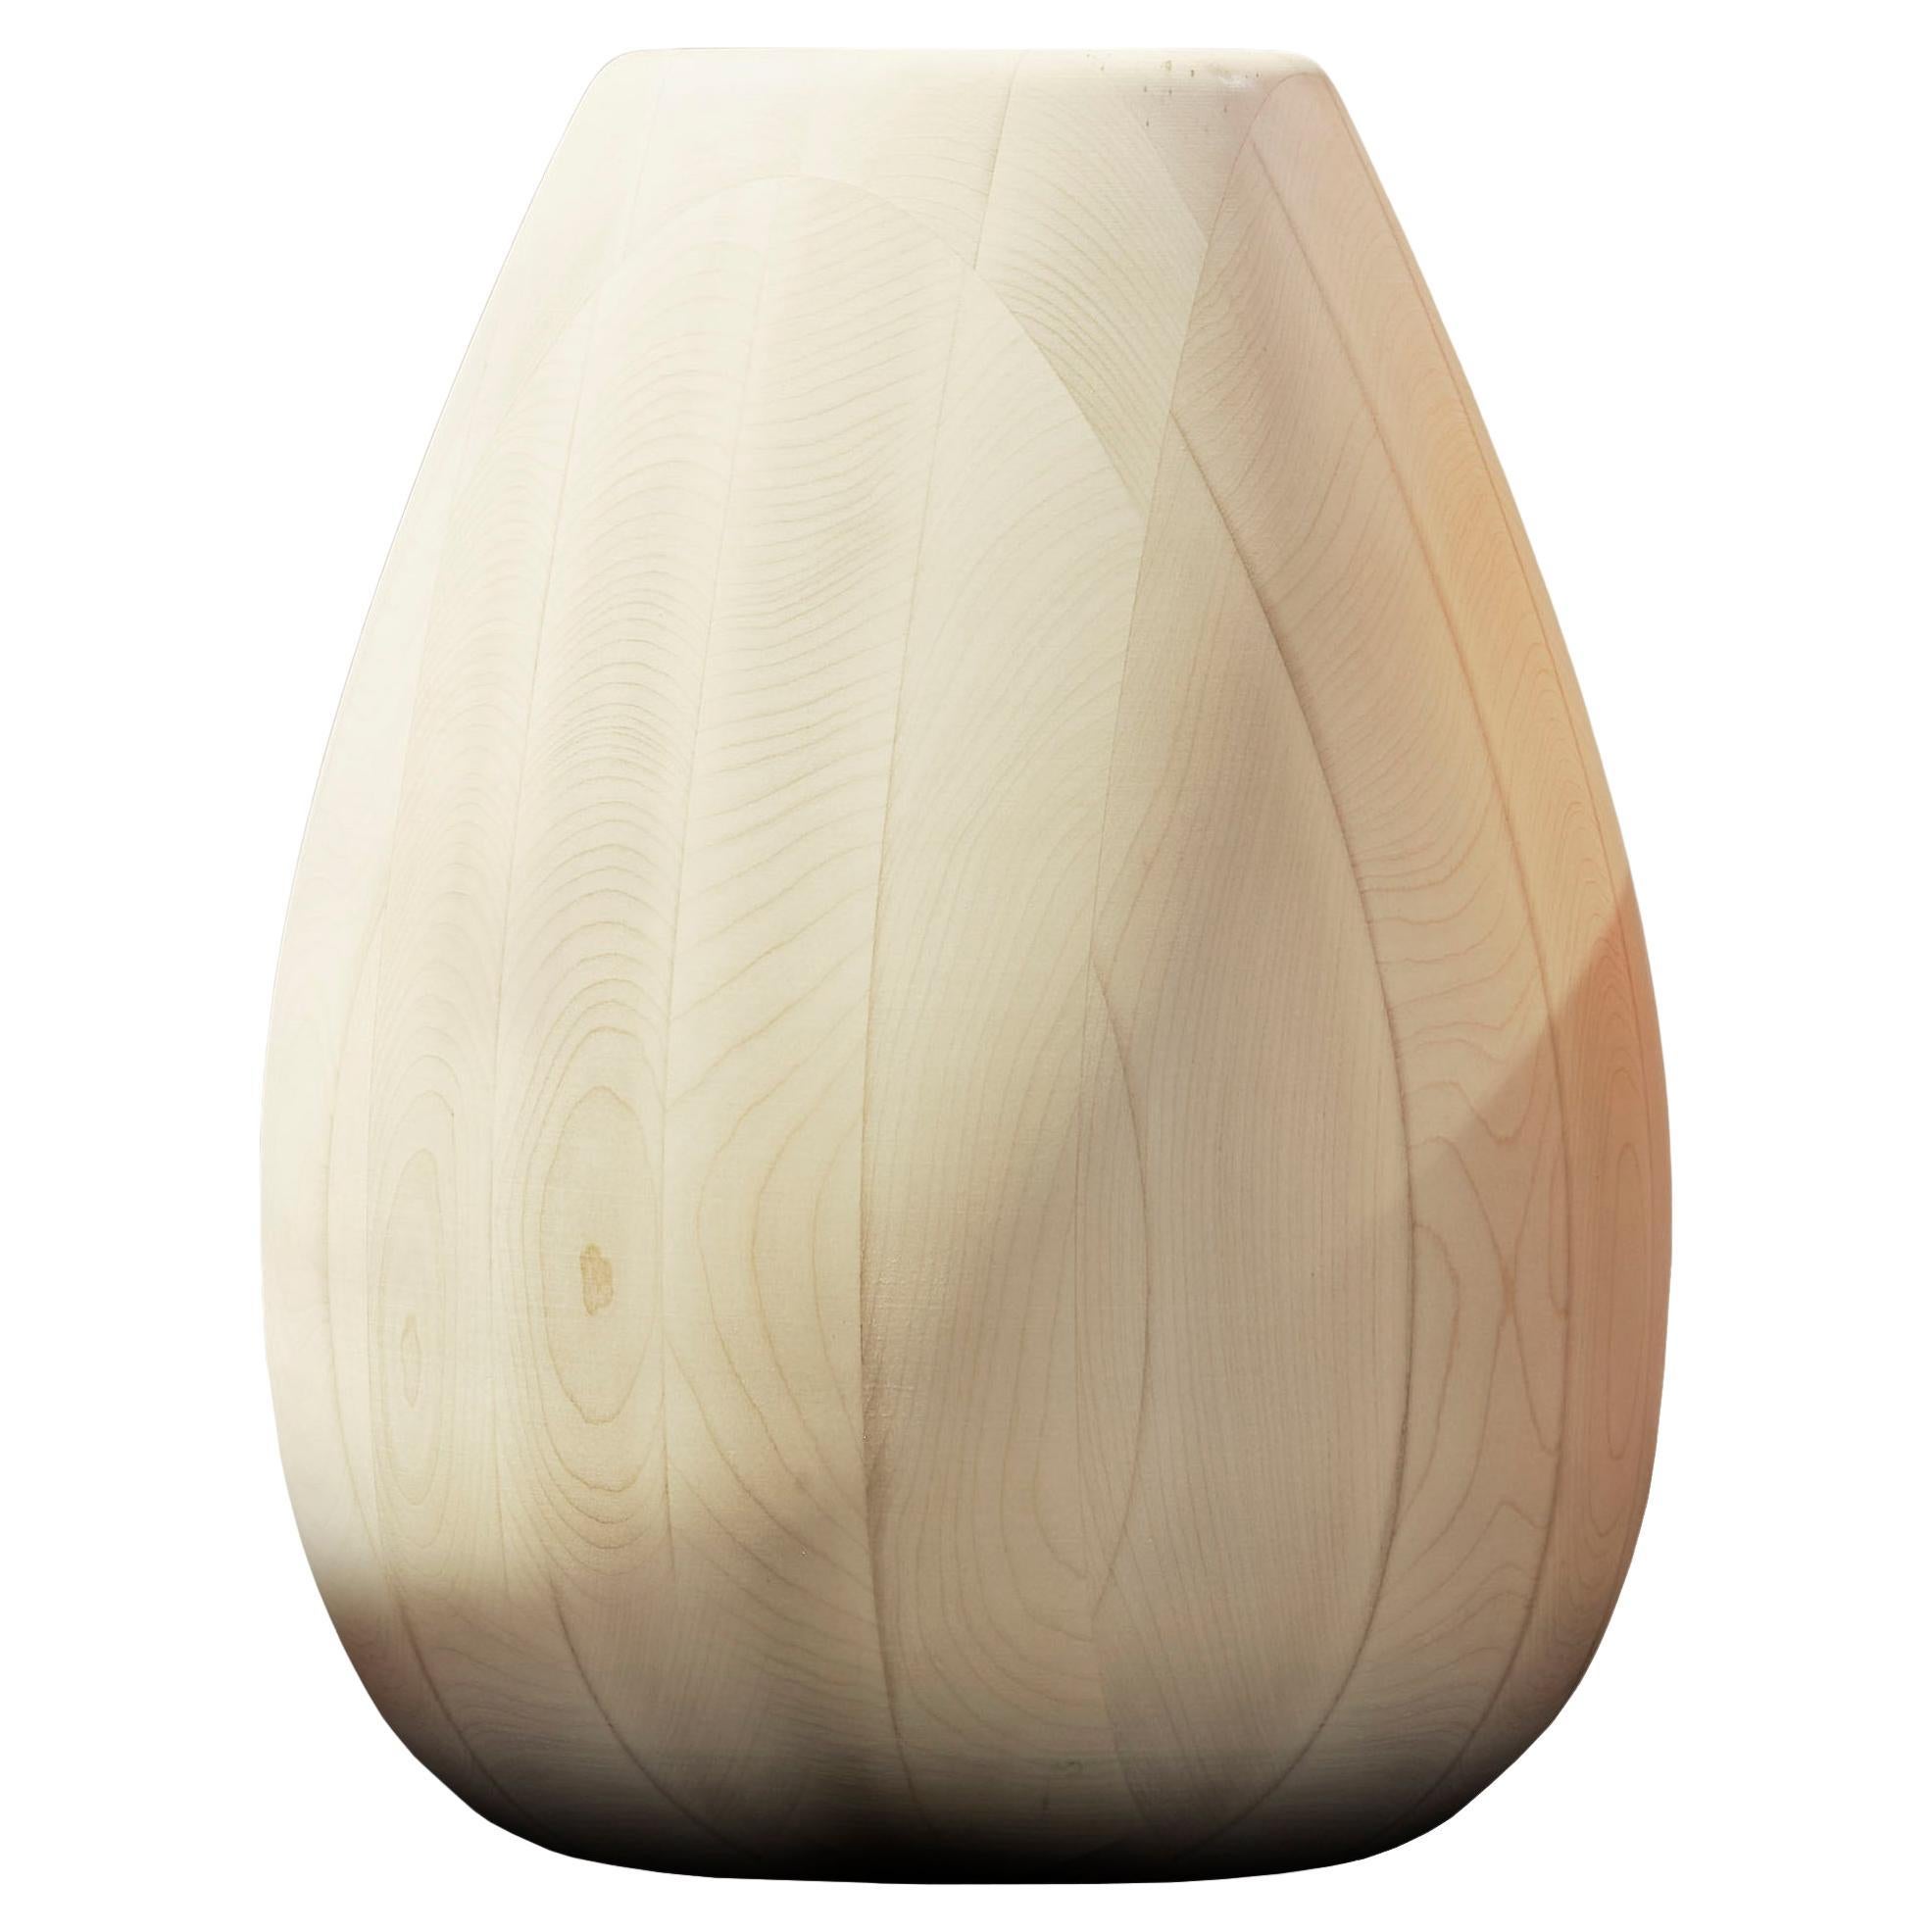 Maple Wood Vase h25 design Franco Albini - edit b Officina della Scala